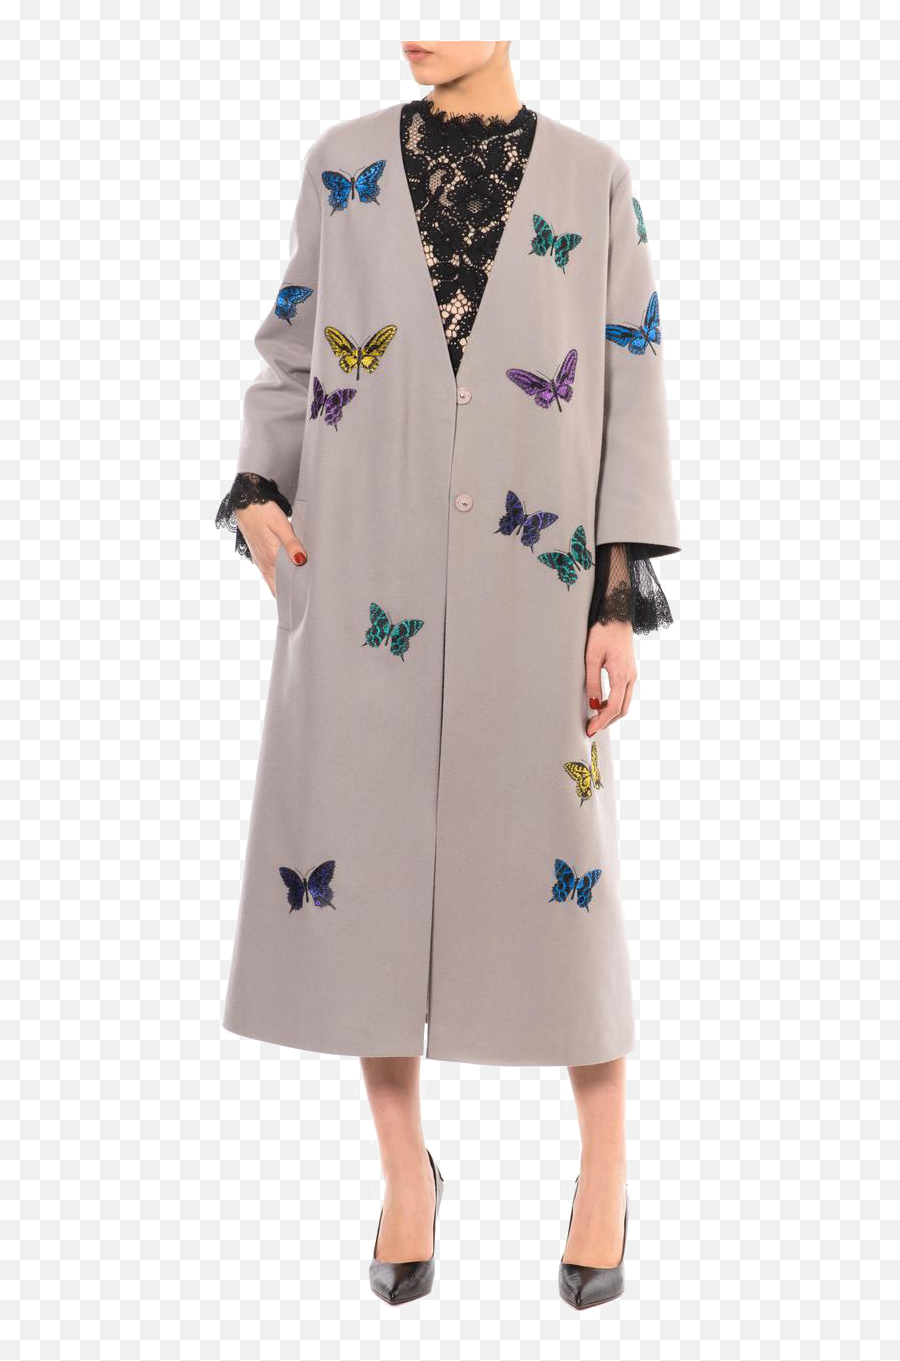 Spring Coat Transparent Background Png - Overcoat,Spring Background Png